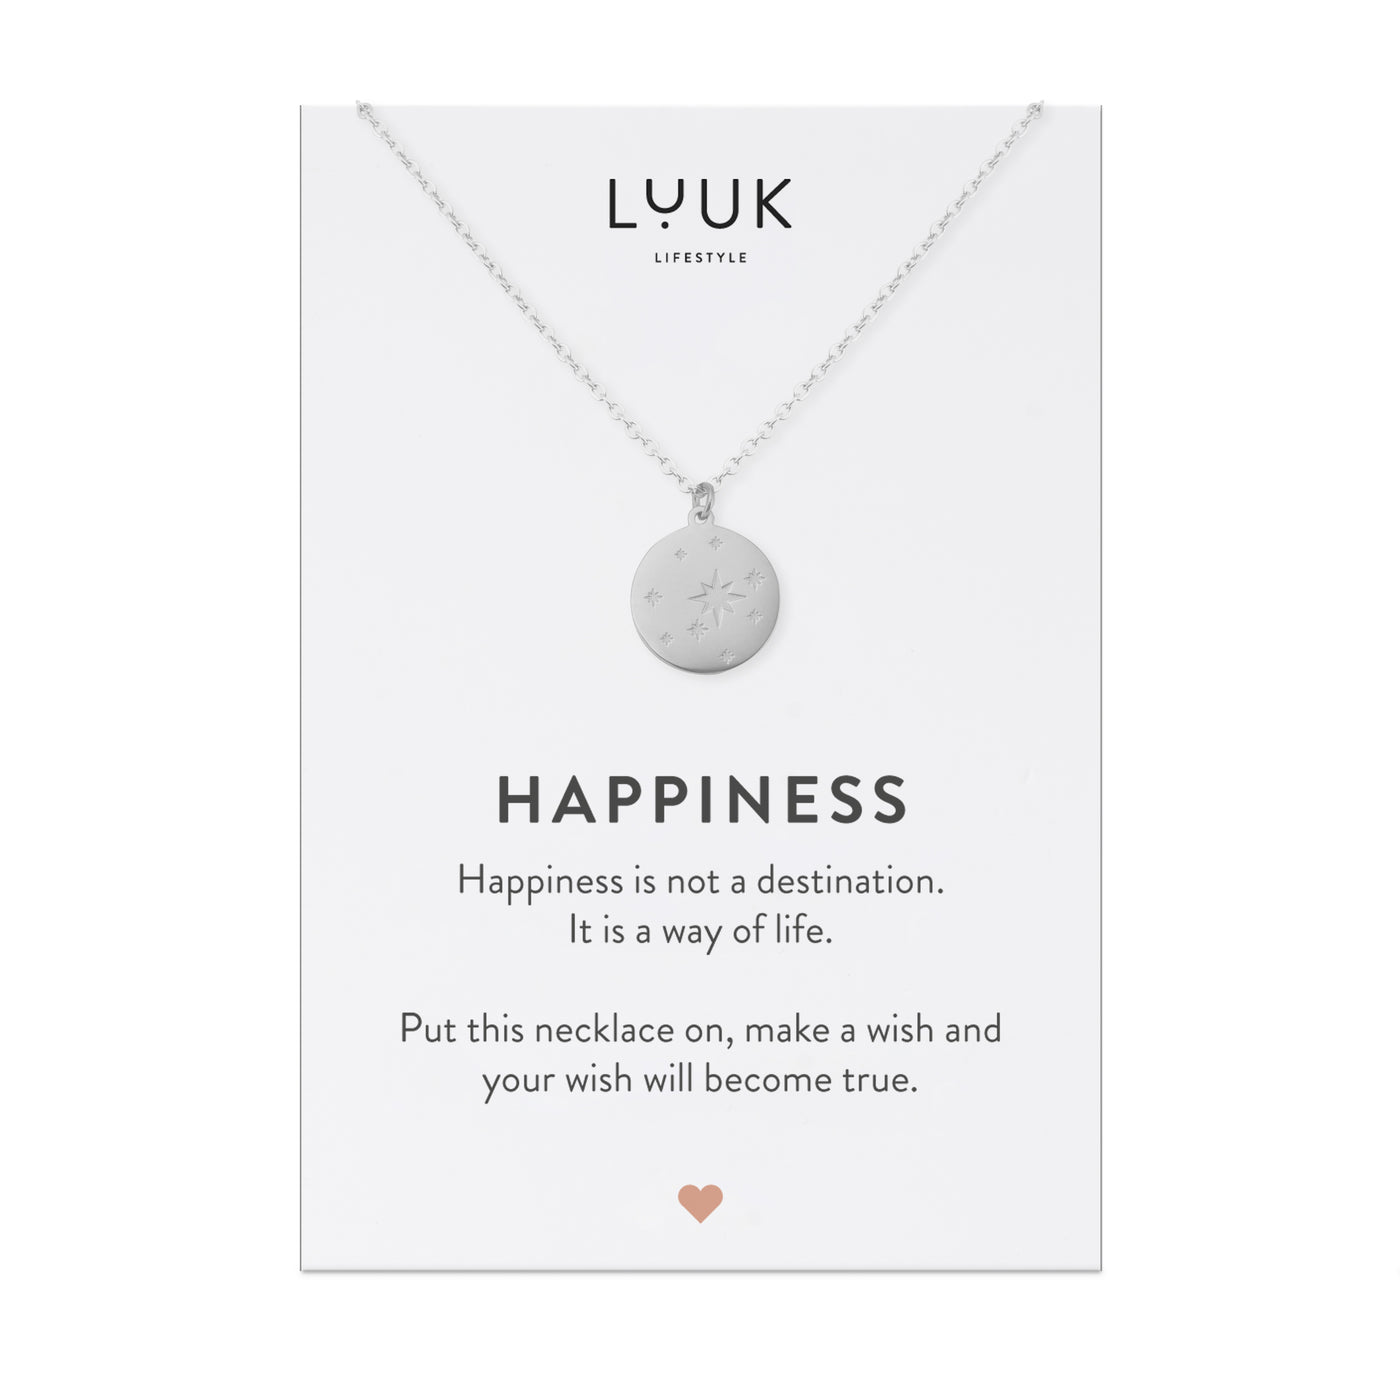 Silberne Halskette mit Sternenhimmel Anhänger auf Happiness Karte von der Marke Luuk Lifestyle.